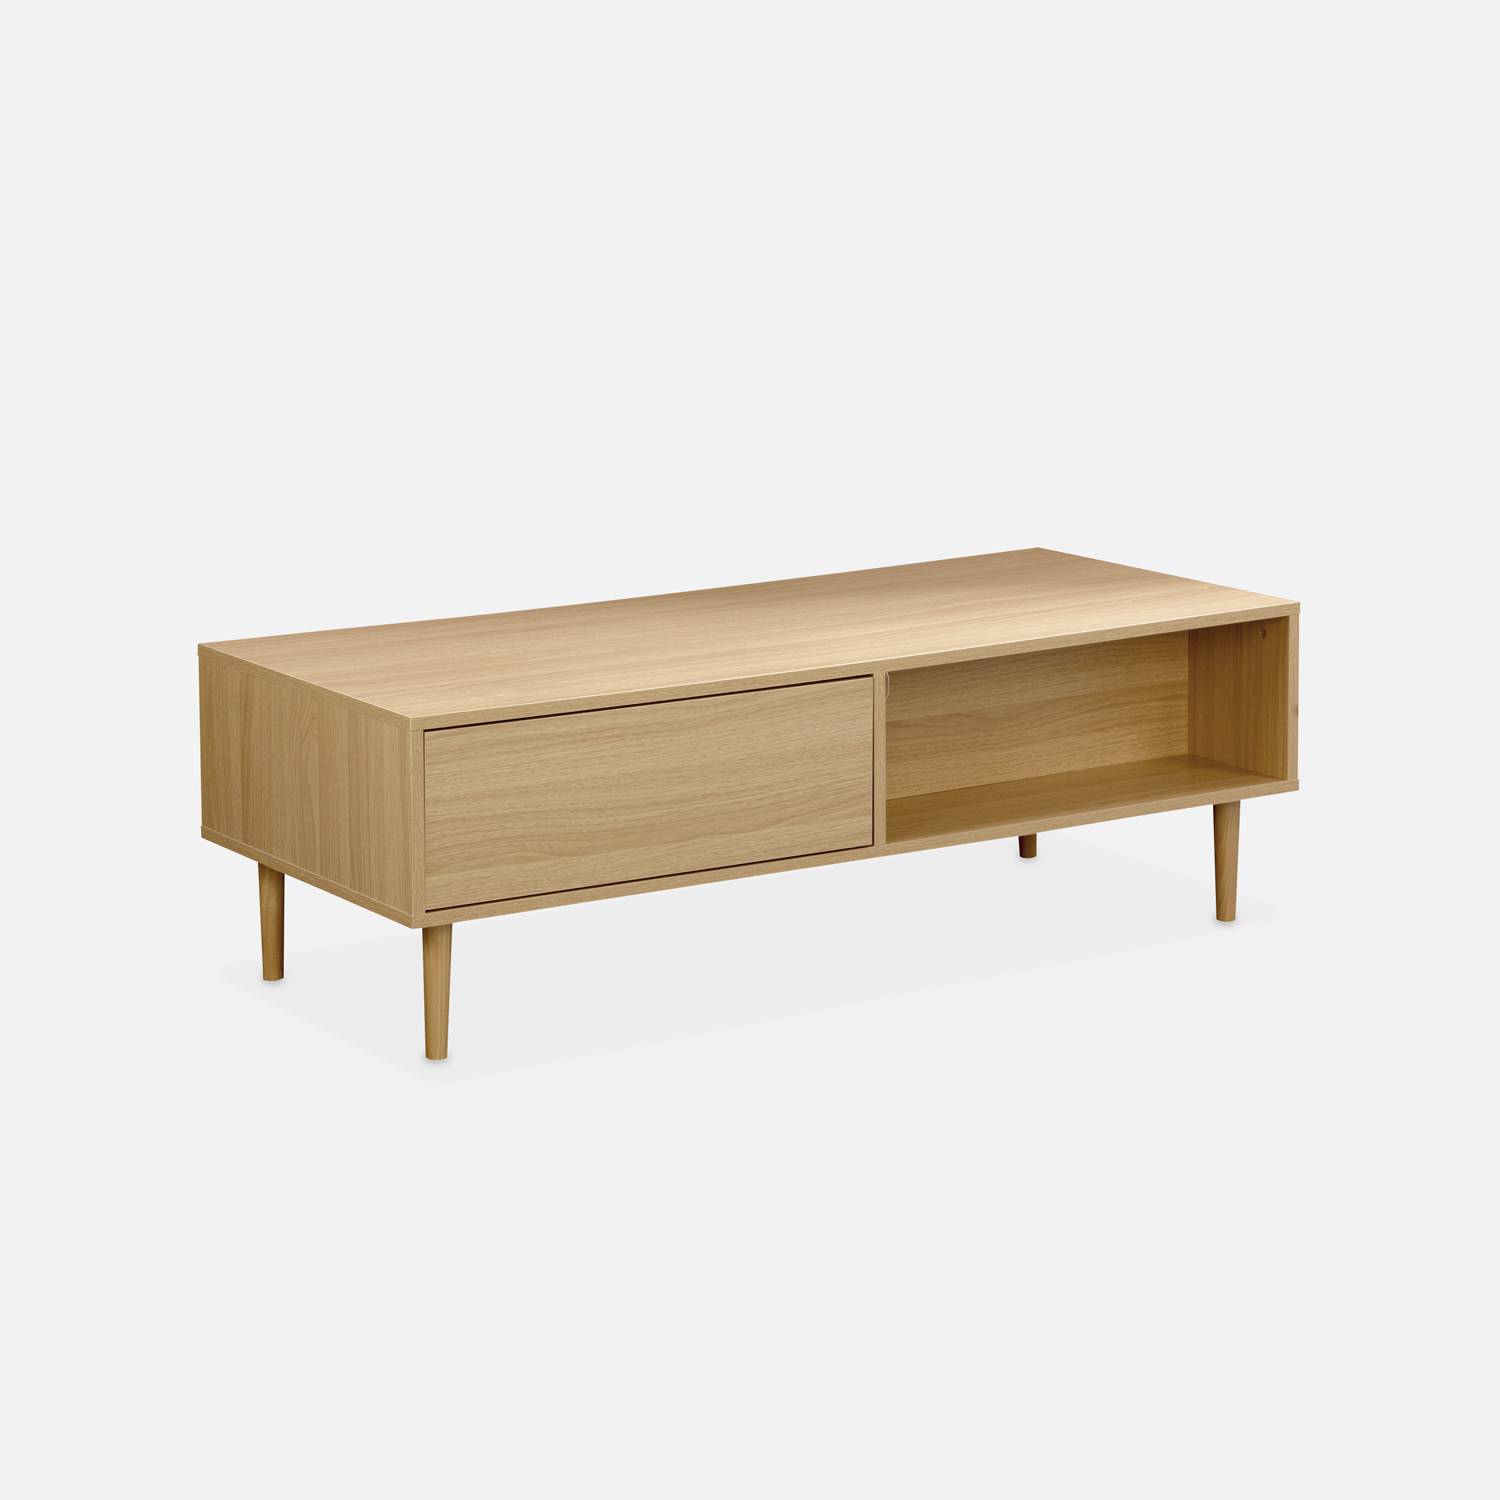 Table basse en décor bois - Mika - 2 tiroirs, 2 espaces de rangement, L 120 x l 55 x H 40cm,sweeek,Photo3